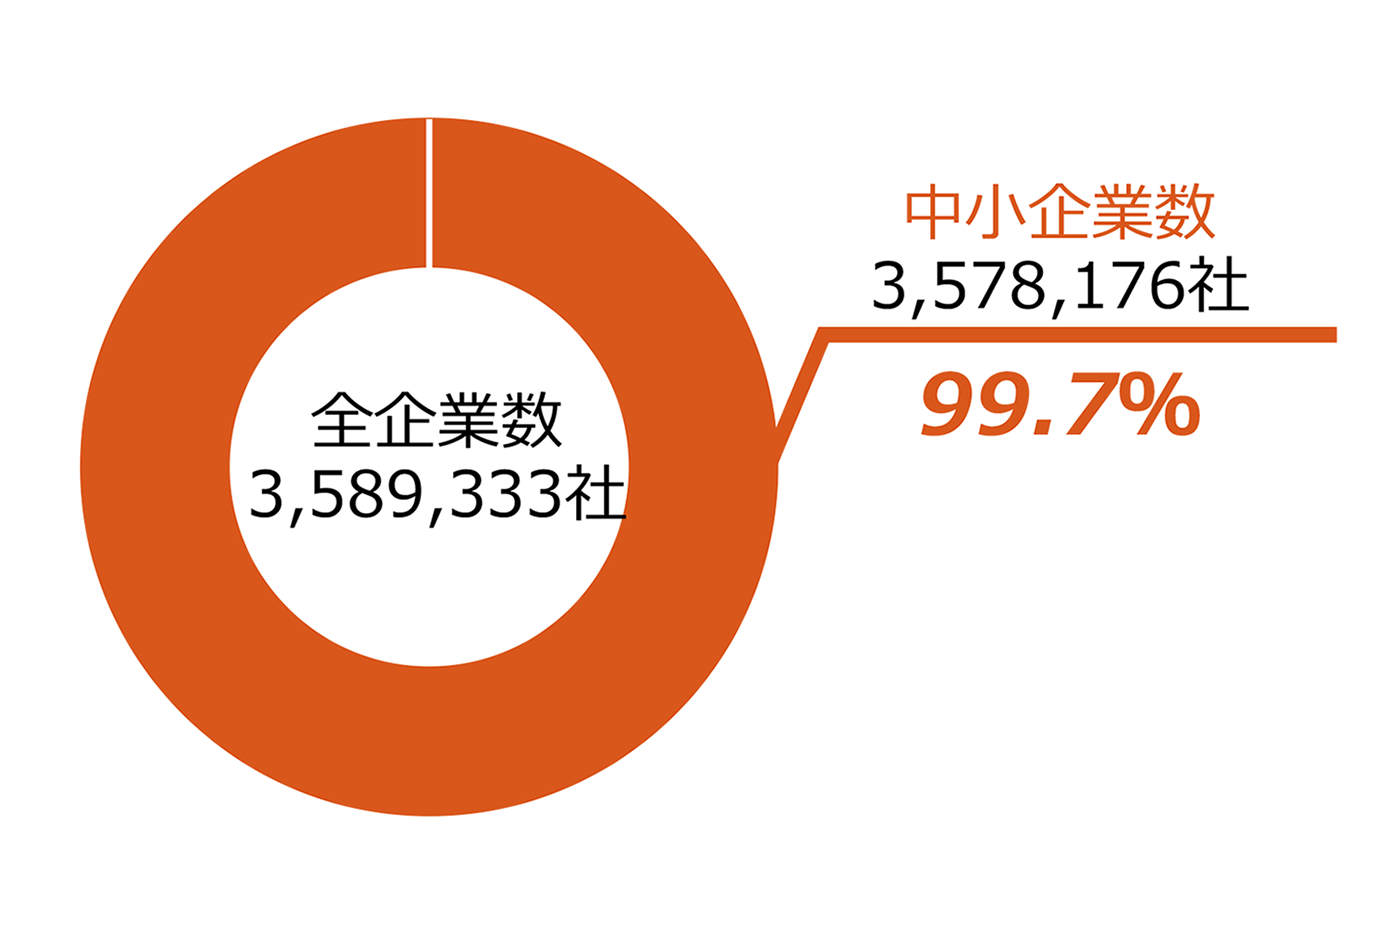 日本企業のうち中小企業が占める割合